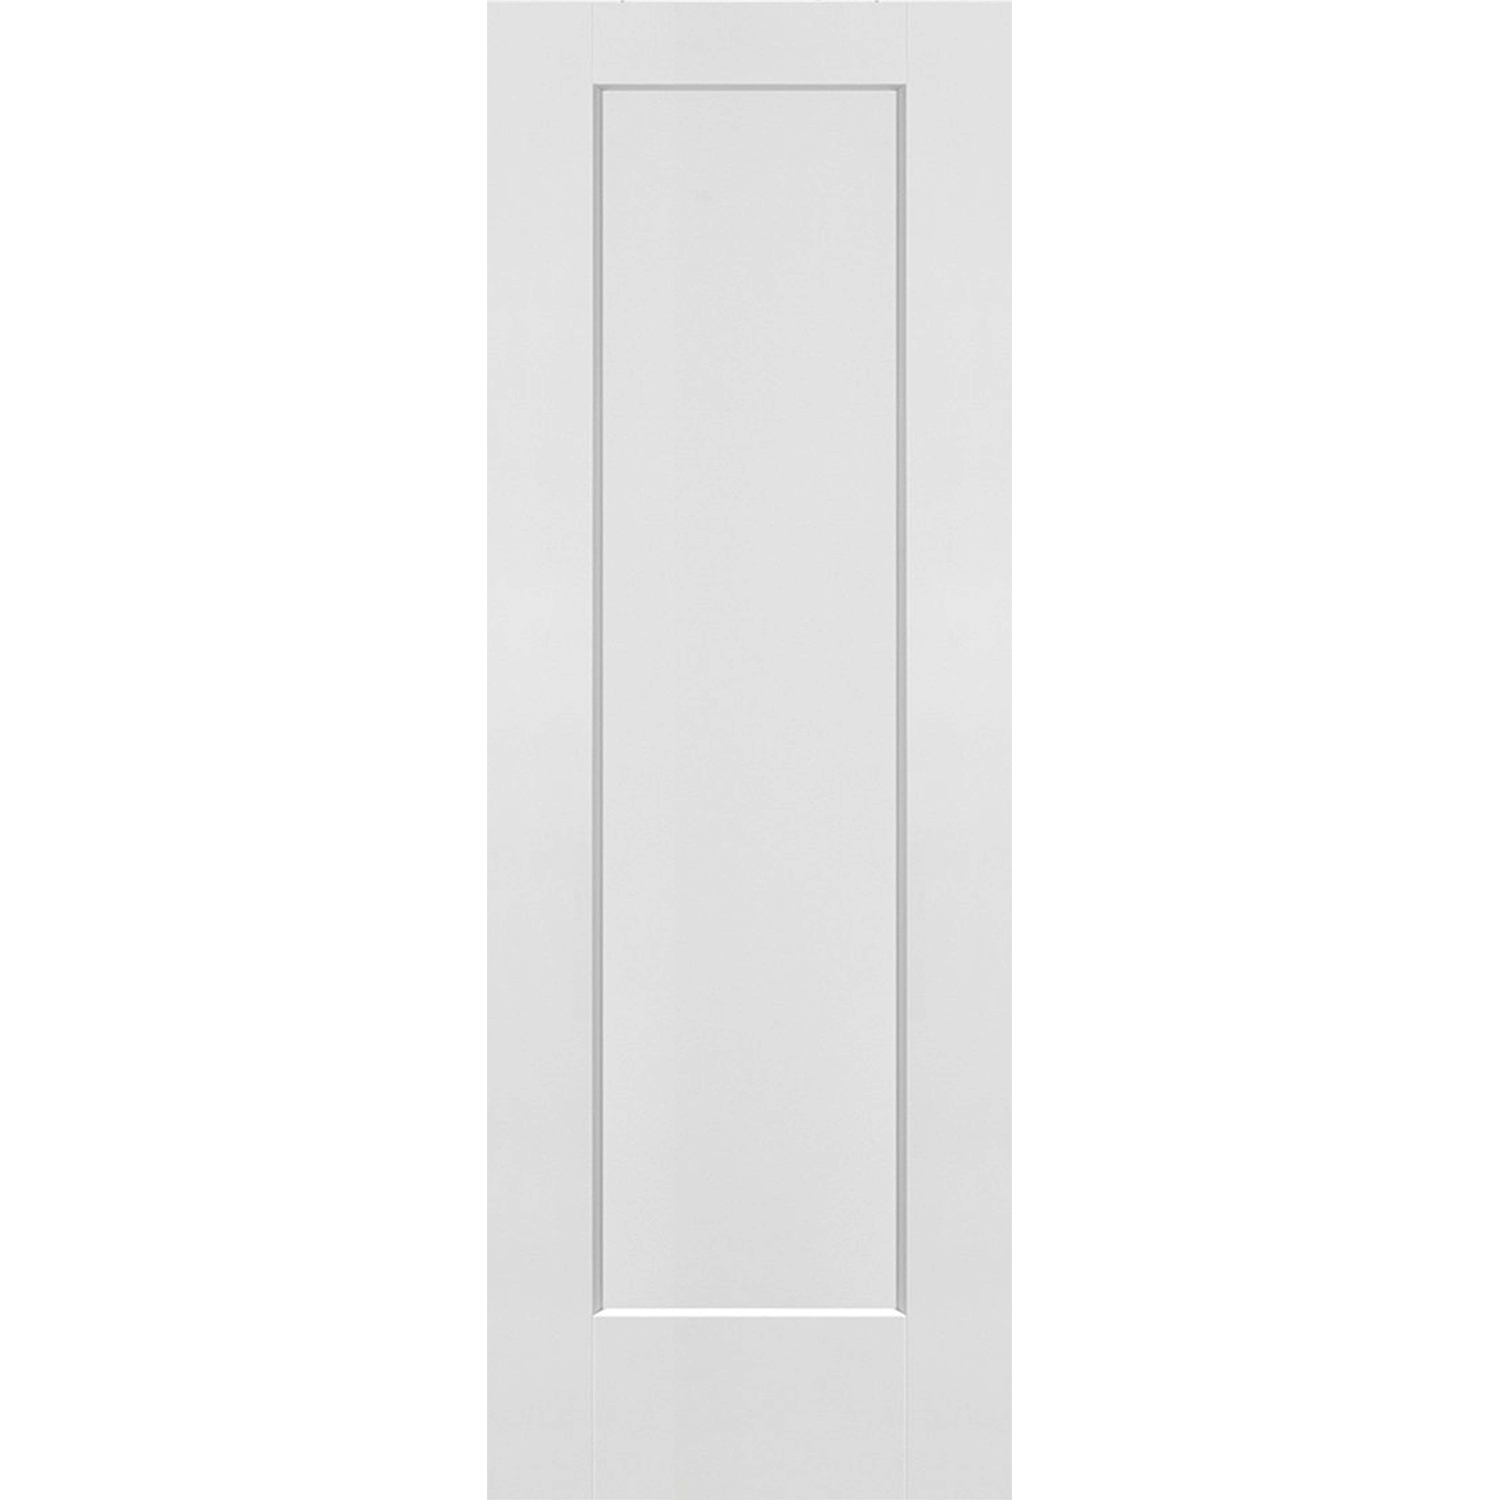 1 Panel Interior Door Shaker Style (Hollow Core) - 28 x 80 - D1HS28